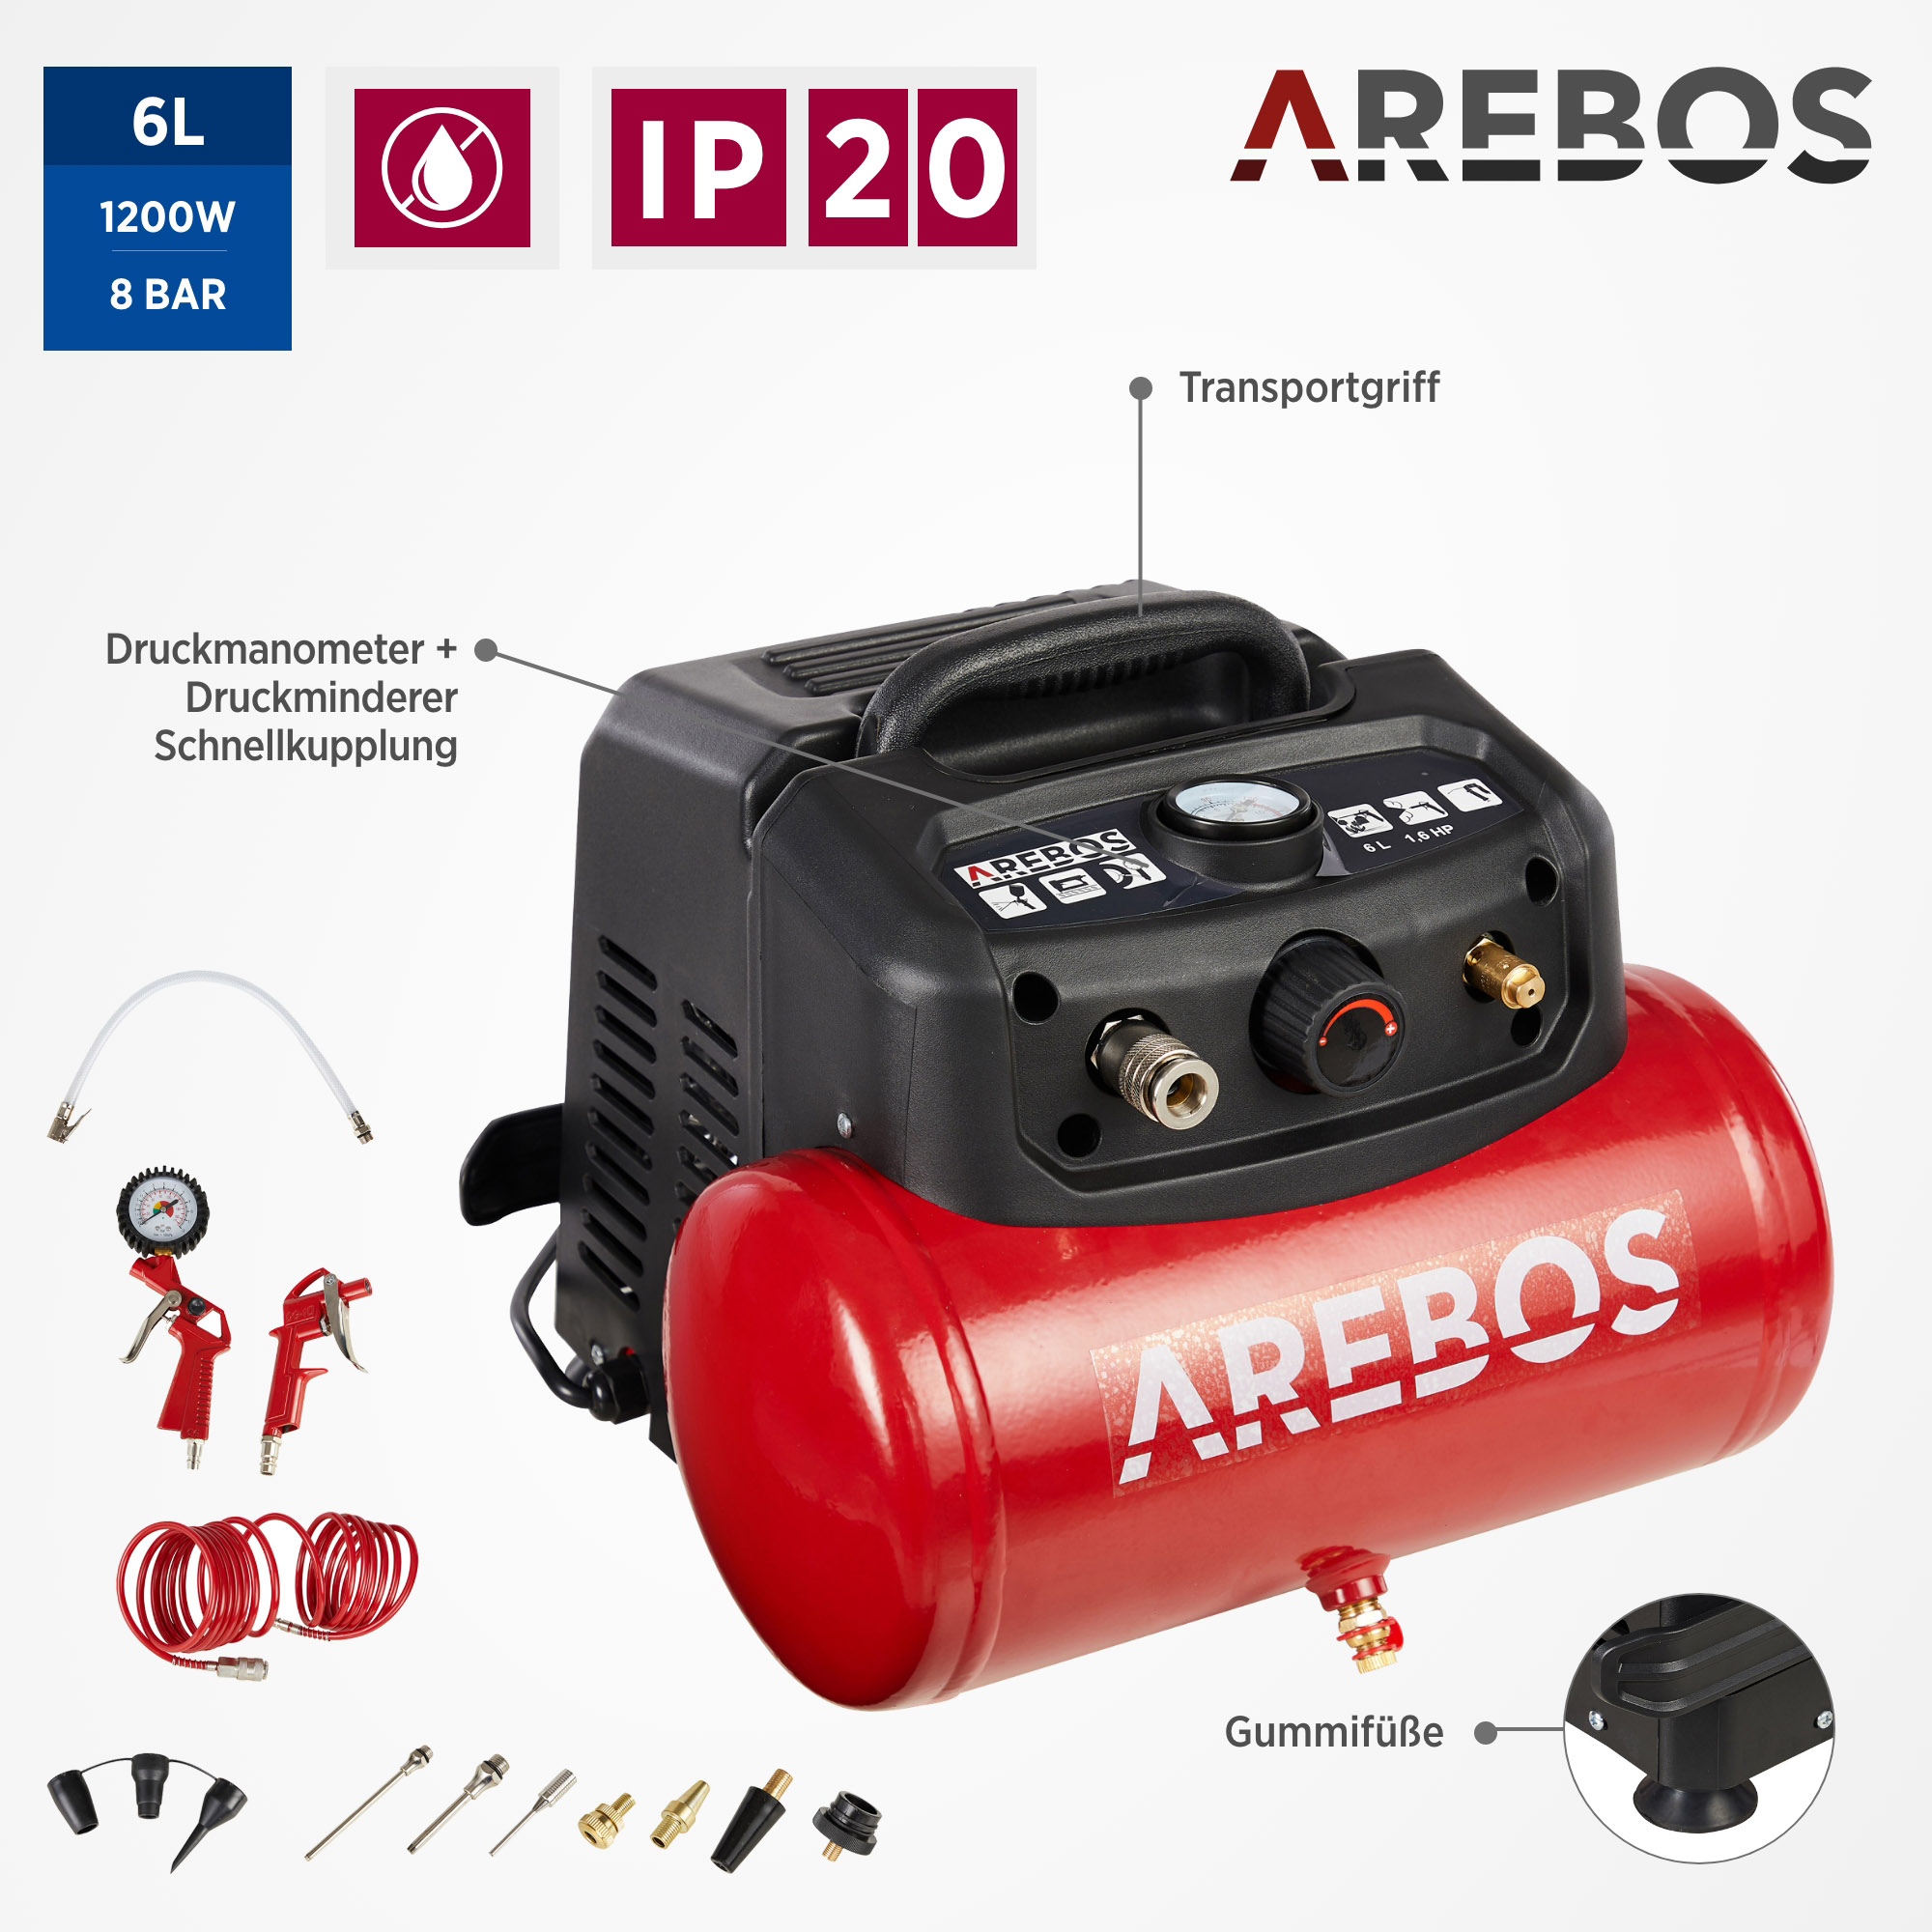 | Luftschlauch | Extra langer Rot 13-tlg. AREBOS Abschaltautomatik Druckluft-Werkzeug-Set Luftkompressor, | inkl. ölfrei